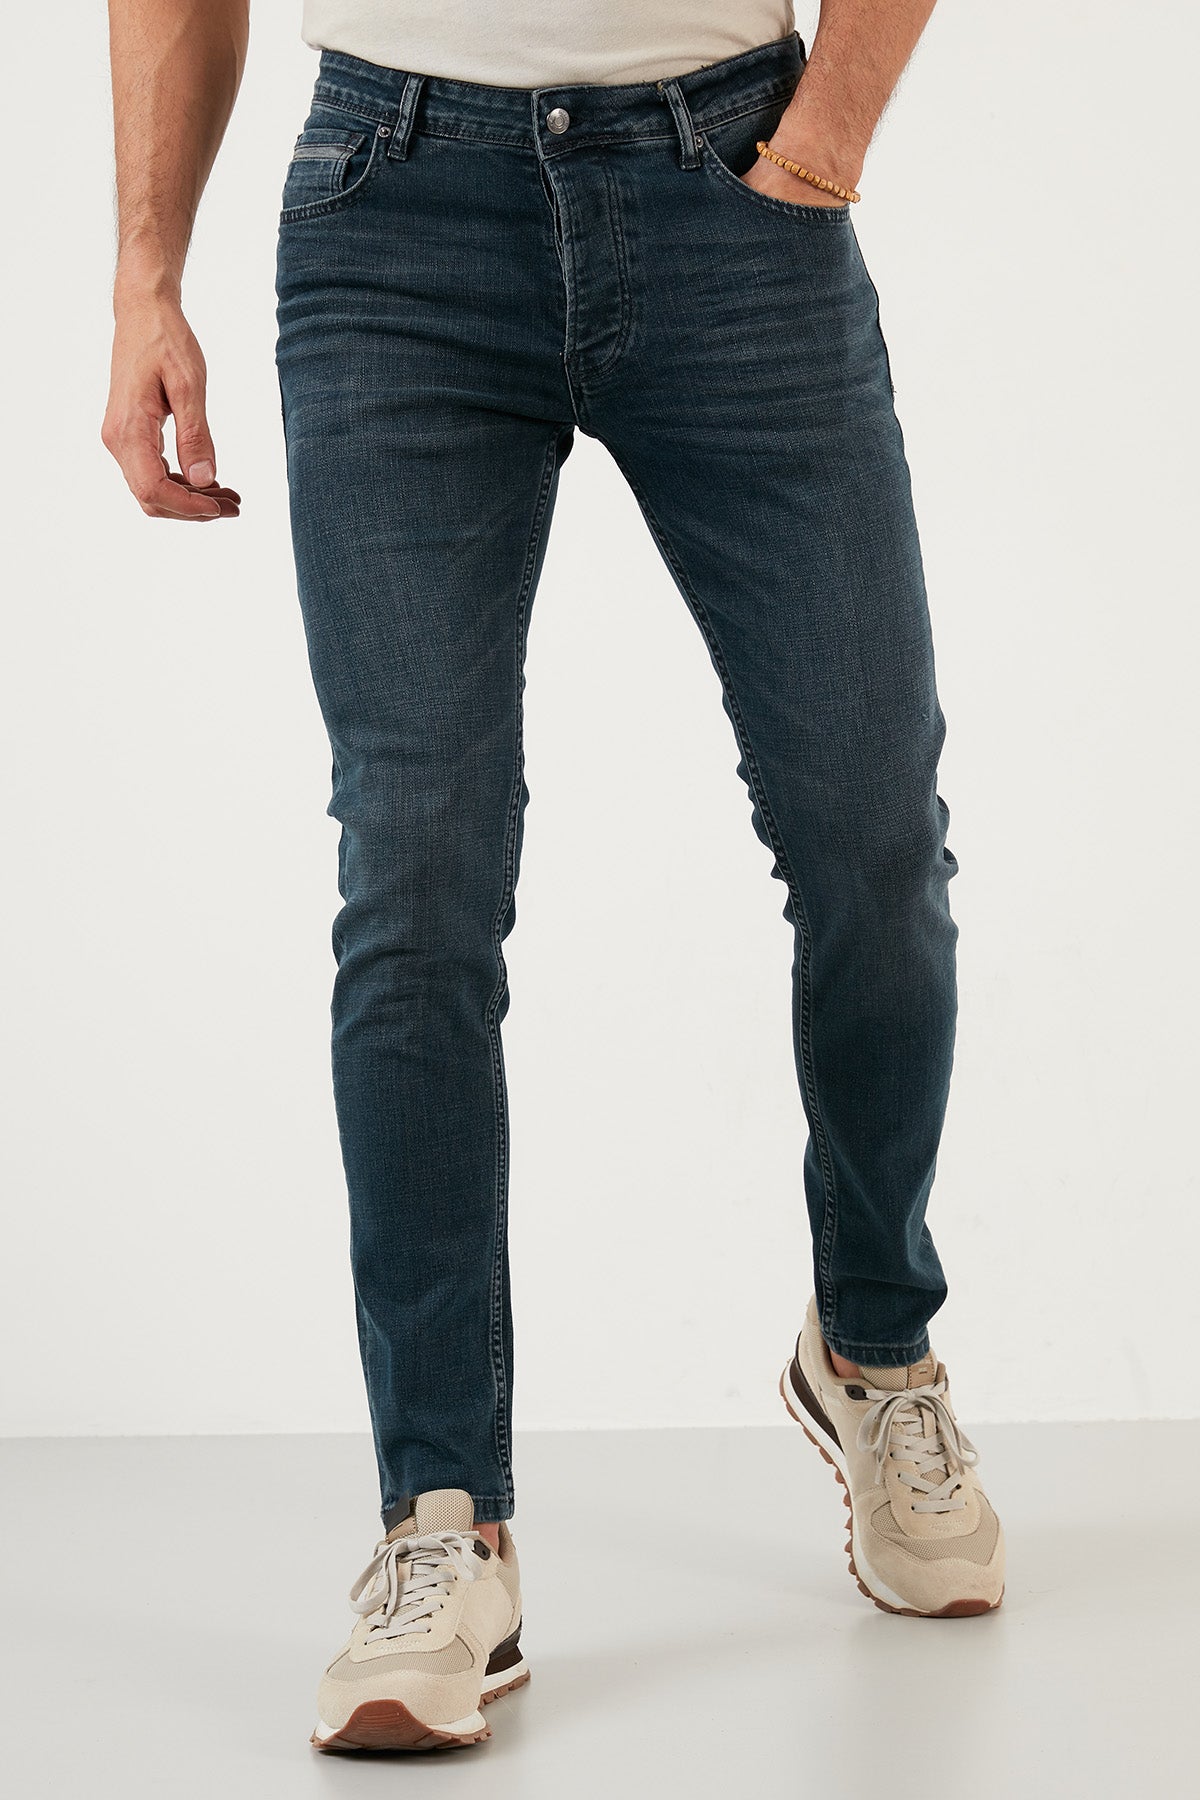 Buratti Pamuklu Normal Bel Slim Fit Dar Paça Jeans Erkek Kot Pantolon 1000F09NAPOLI MAVİ